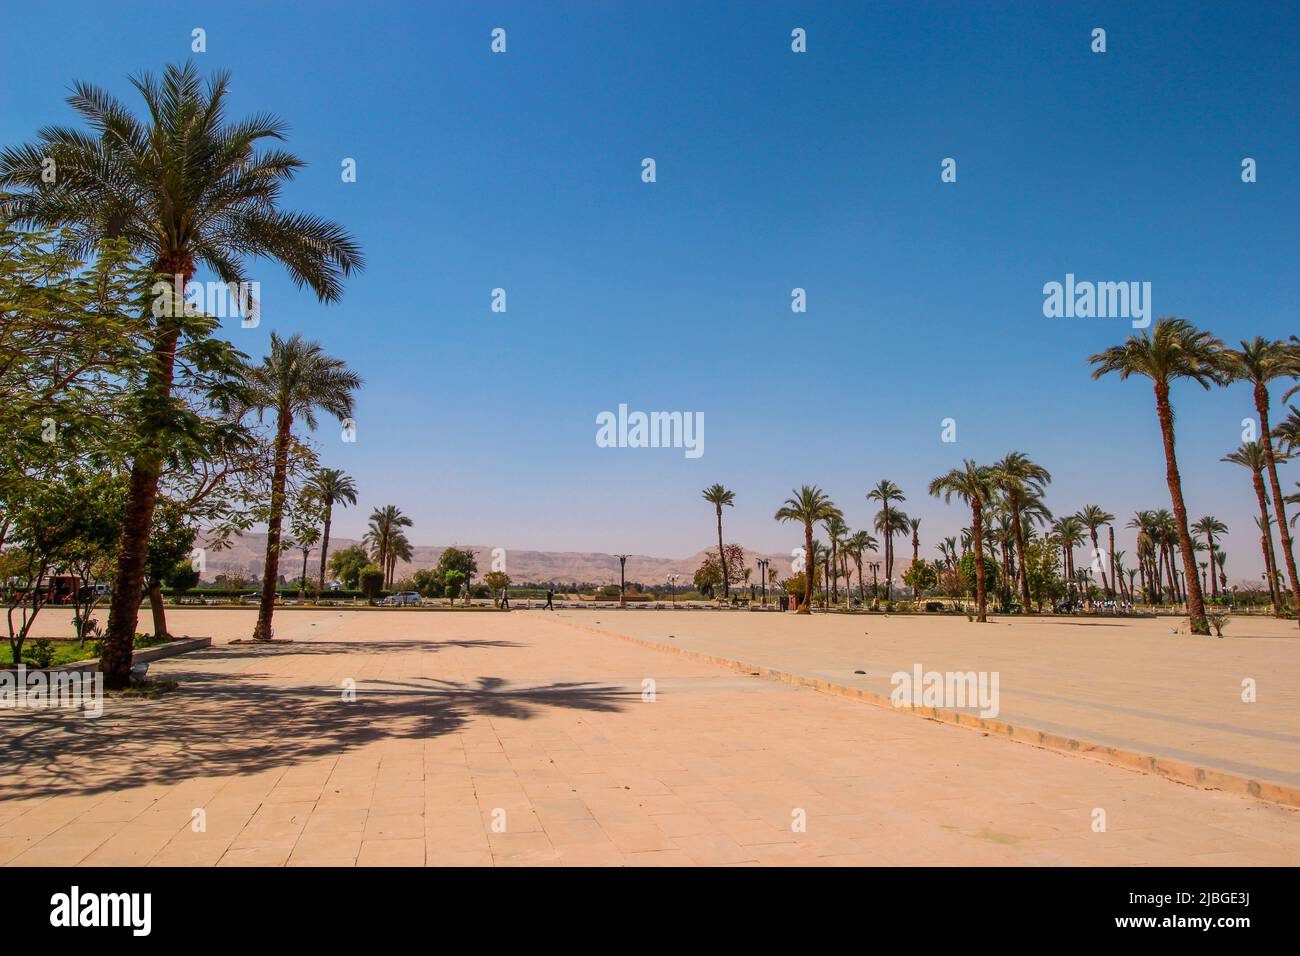 Innenstadt in Luxor, Ägypten. Bild der Ruinen mit Kakteen und Bäumen in der Wüste außerhalb des Stadtzentrums. Stockfoto